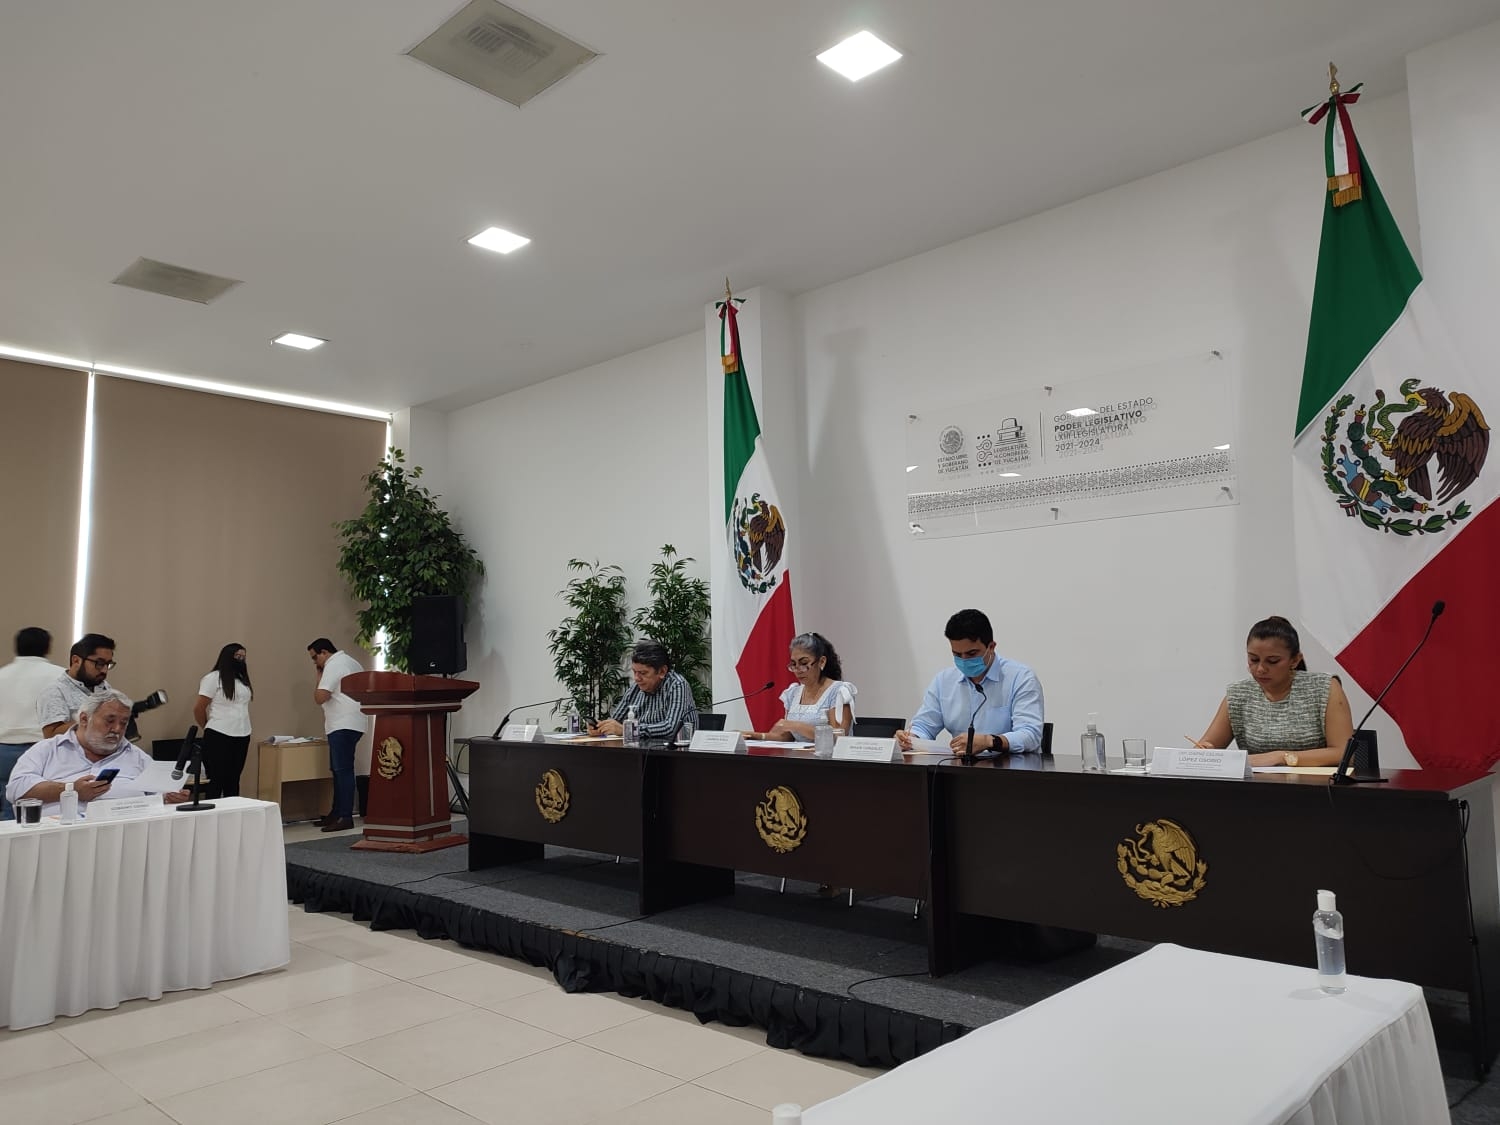 El Congreso de Yucatán analizará los trabajos de los postulantes